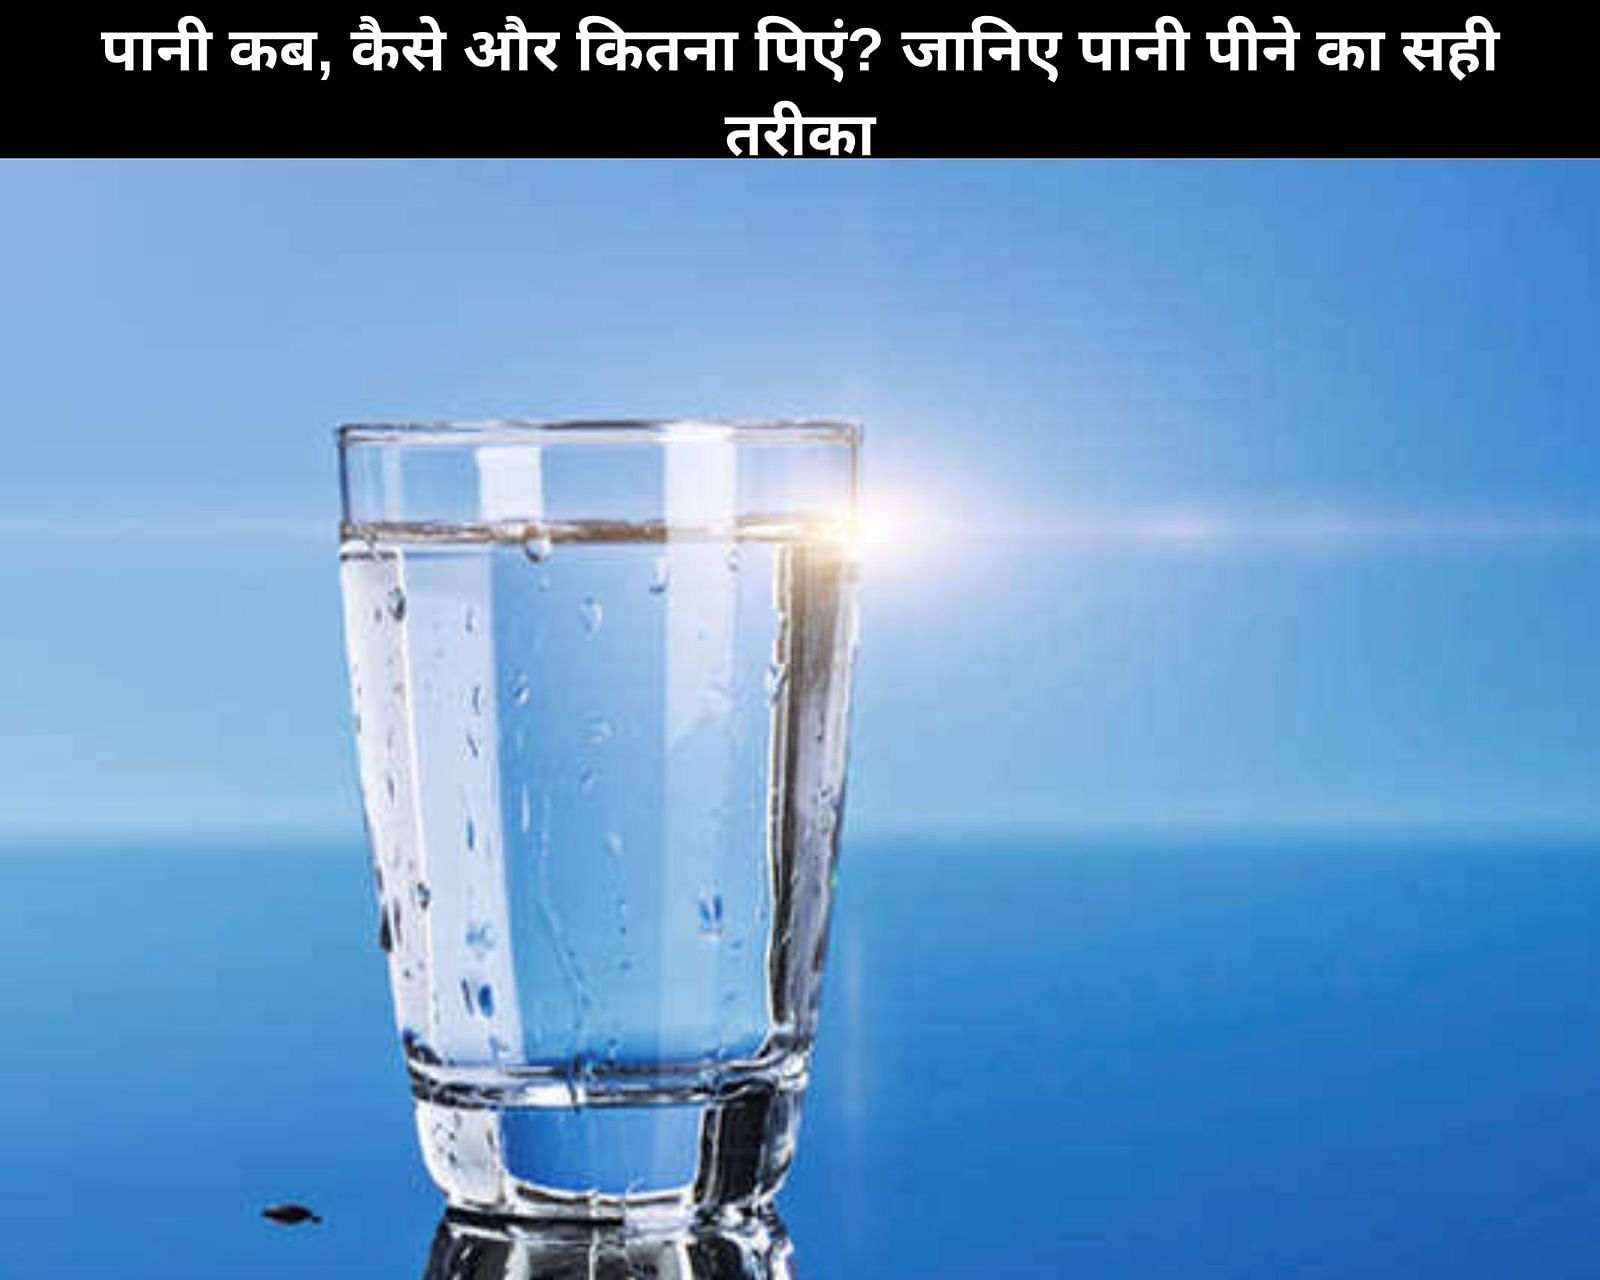 पानी कब, कैसे और कितना पिएं? जानिए पानी पीने का सही तरीका (फोटो - sportskeedaहिन्दी)